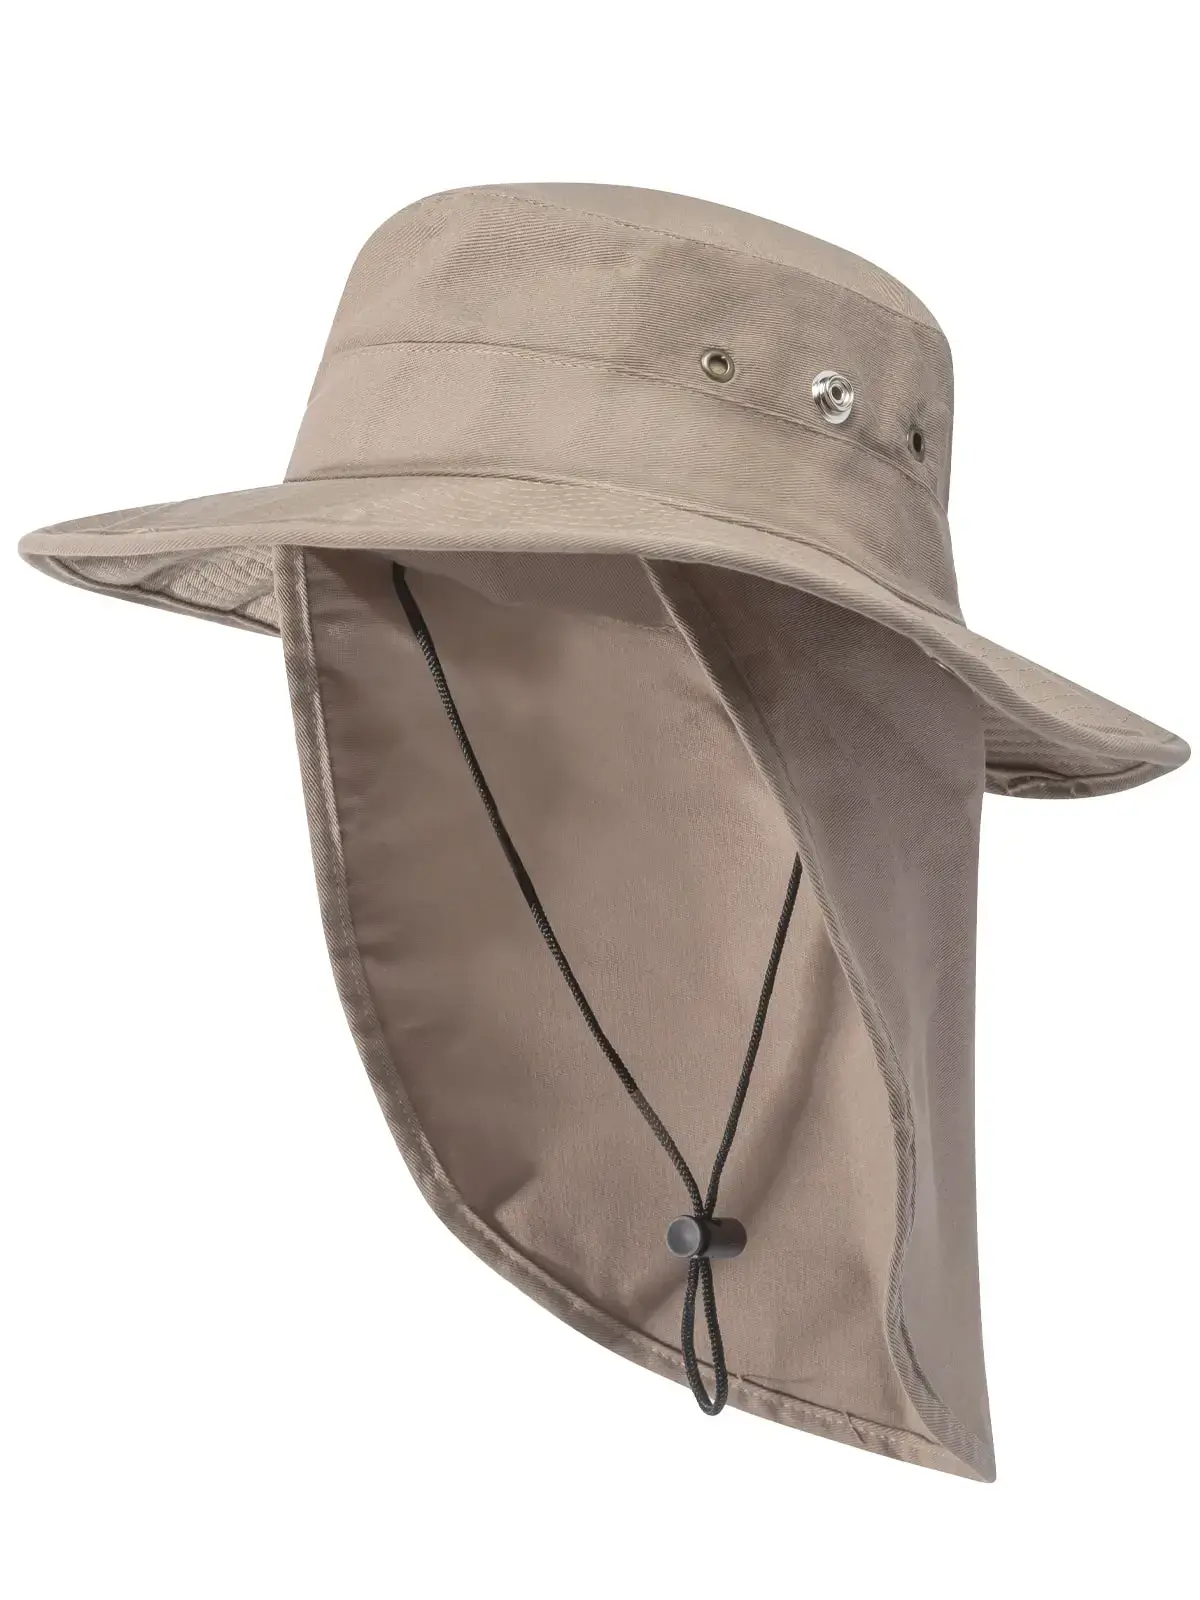 Hiking Bucket Hats